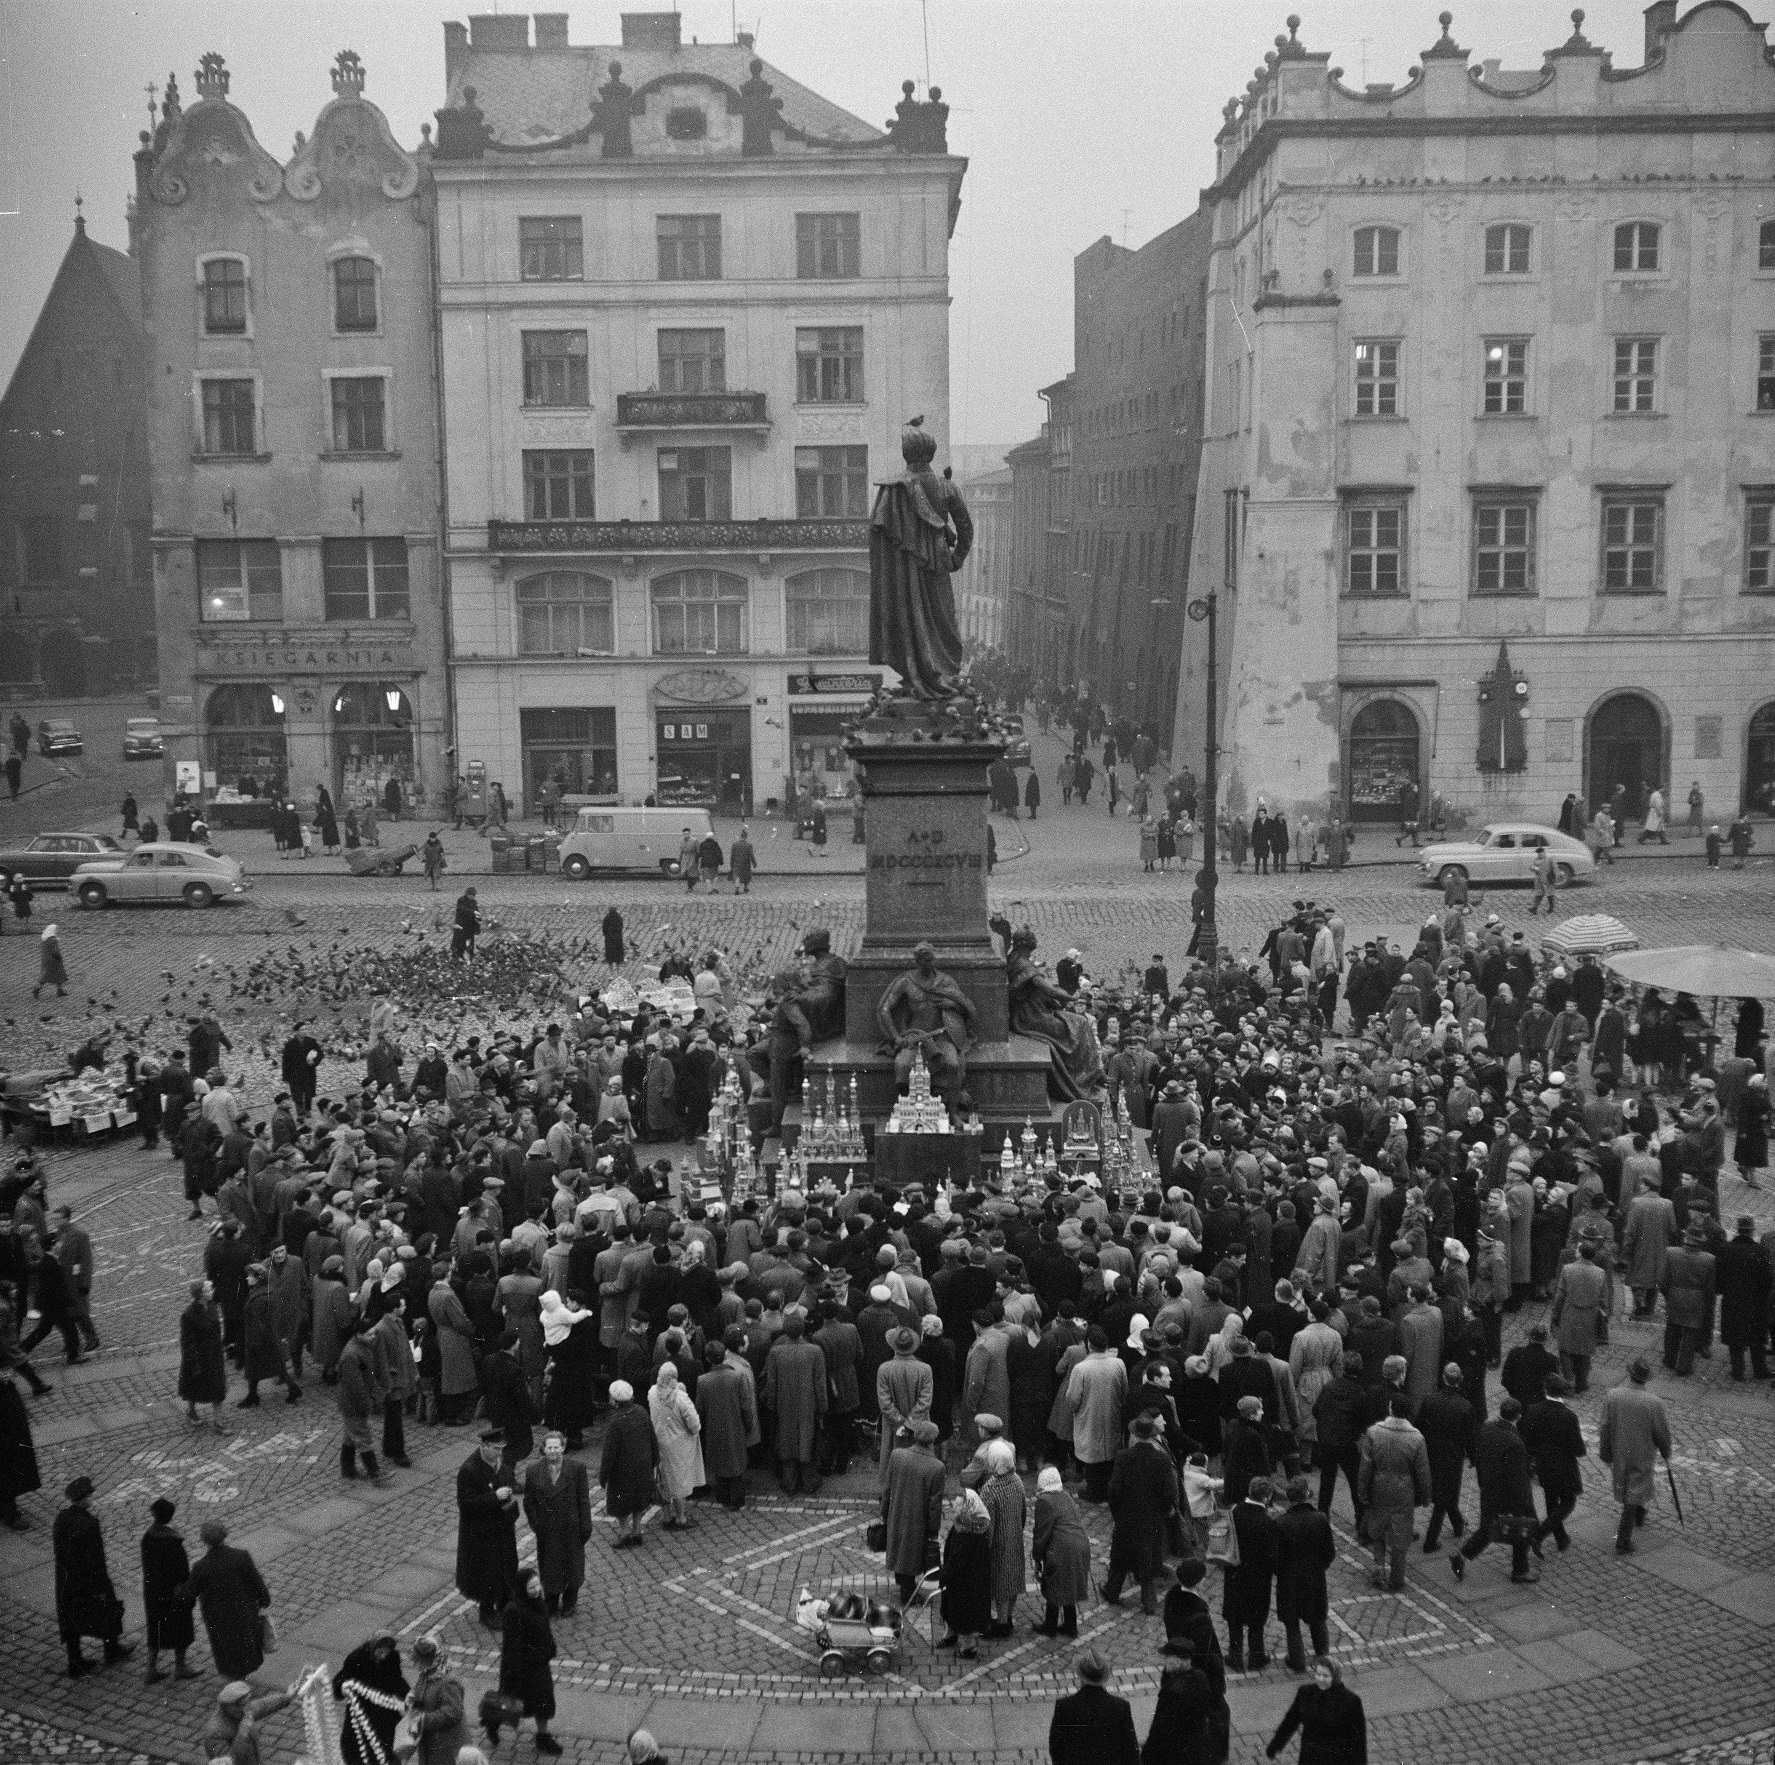 tłum ludzi zgromadzony wokół pomnika Adama Mickiewicza w Krakowie 